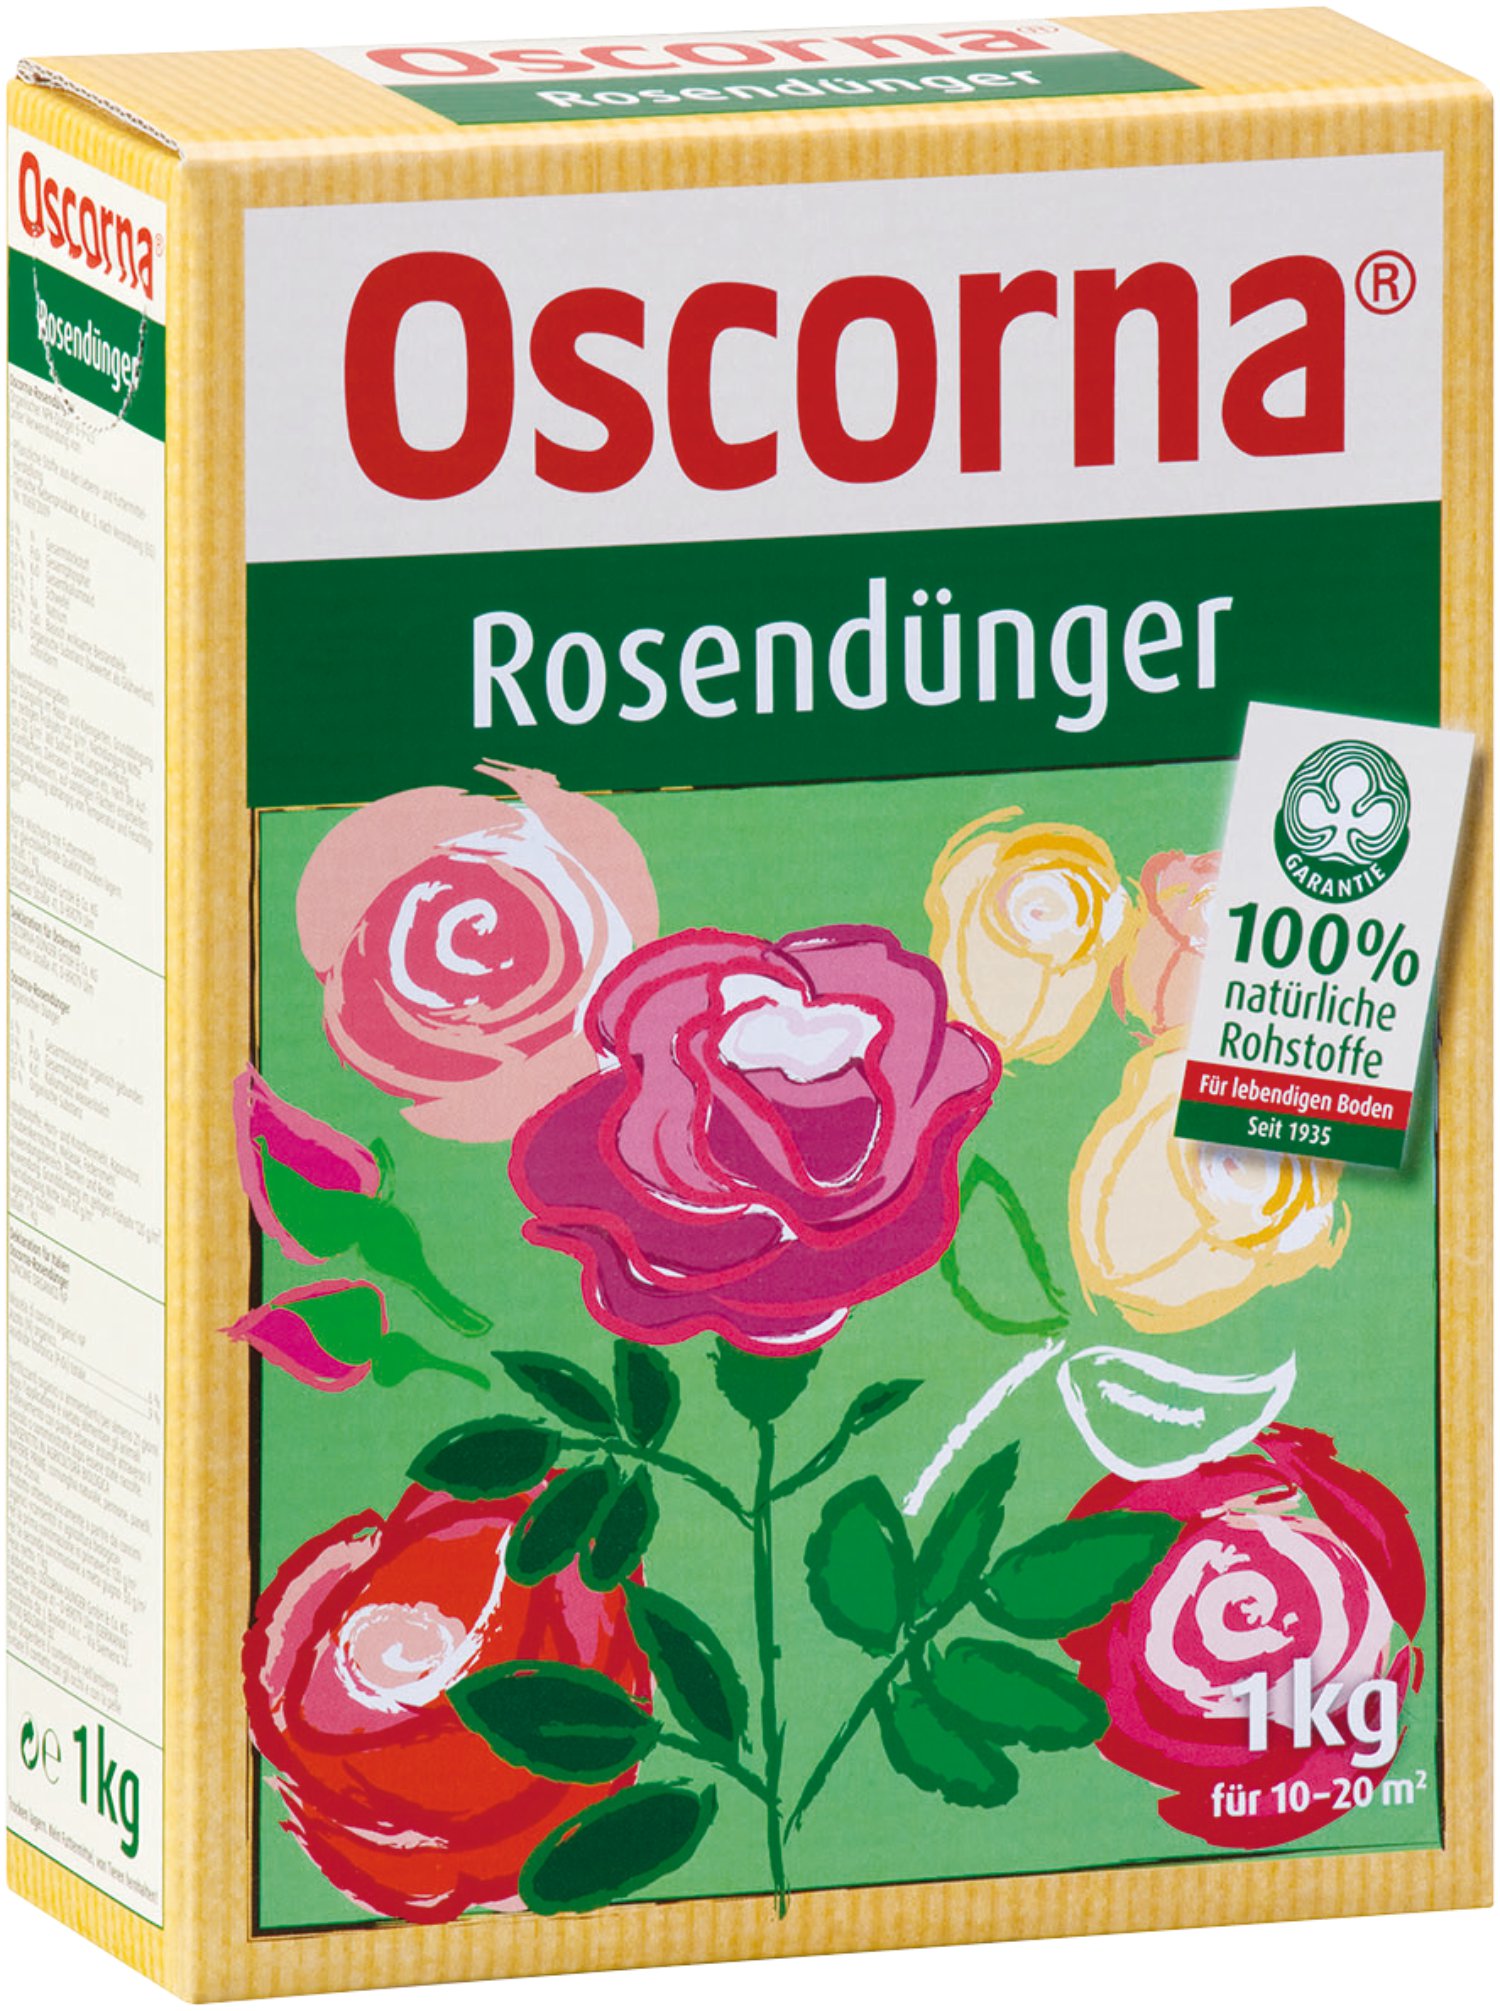 OSCORNA Rosendünger